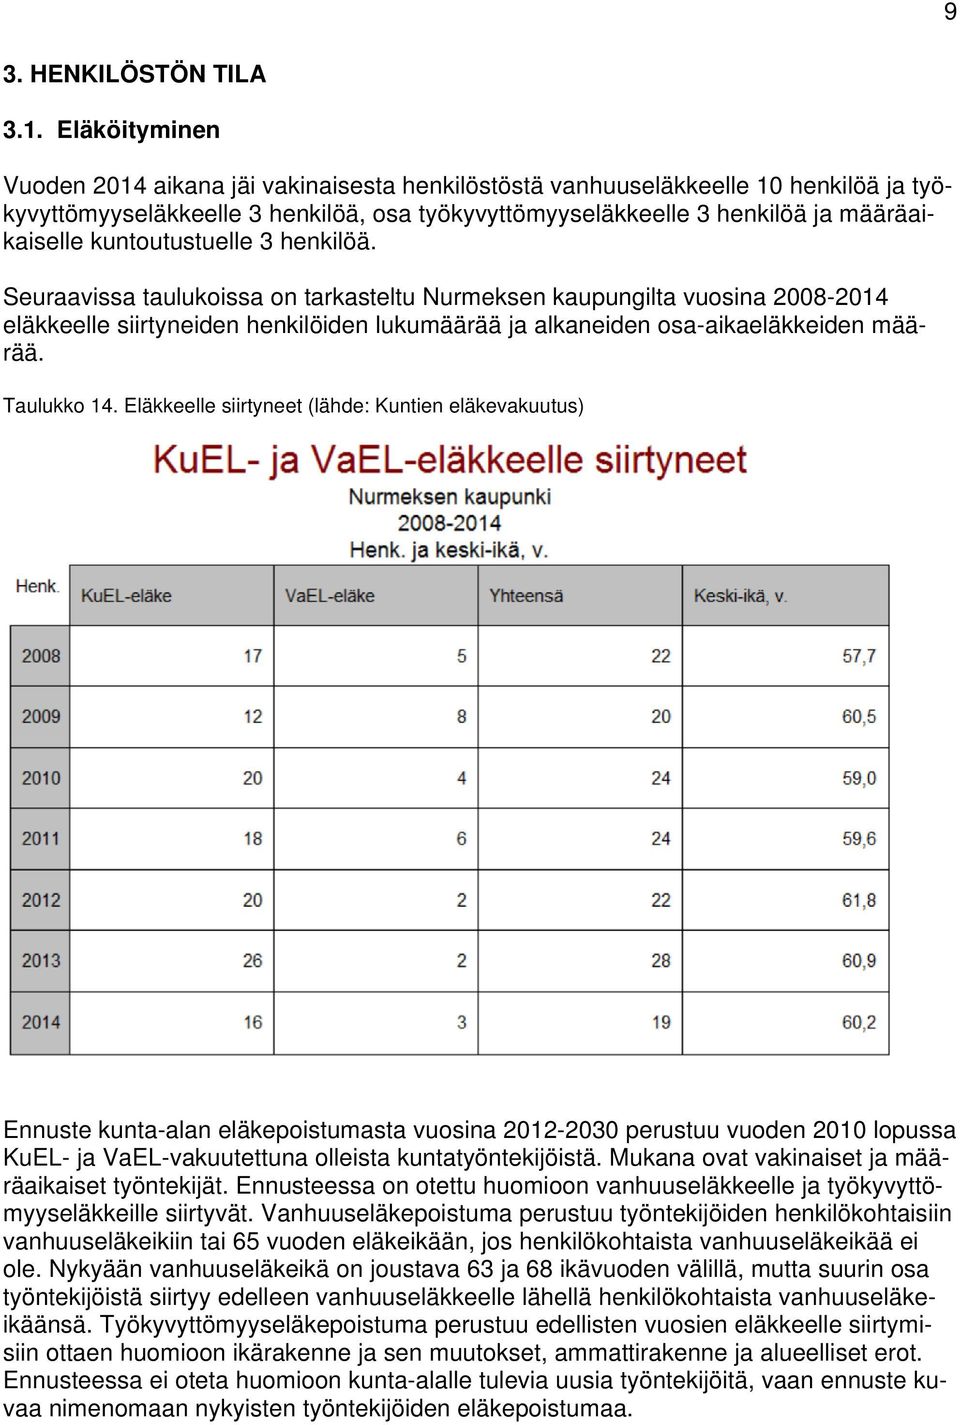 kuntoutustuelle 3 henkilöä. Seuraavissa taulukoissa on tarkasteltu Nurmeksen kaupungilta vuosina 2008-2014 eläkkeelle siirtyneiden henkilöiden lukumäärää ja alkaneiden osa-aikaeläkkeiden määrää.